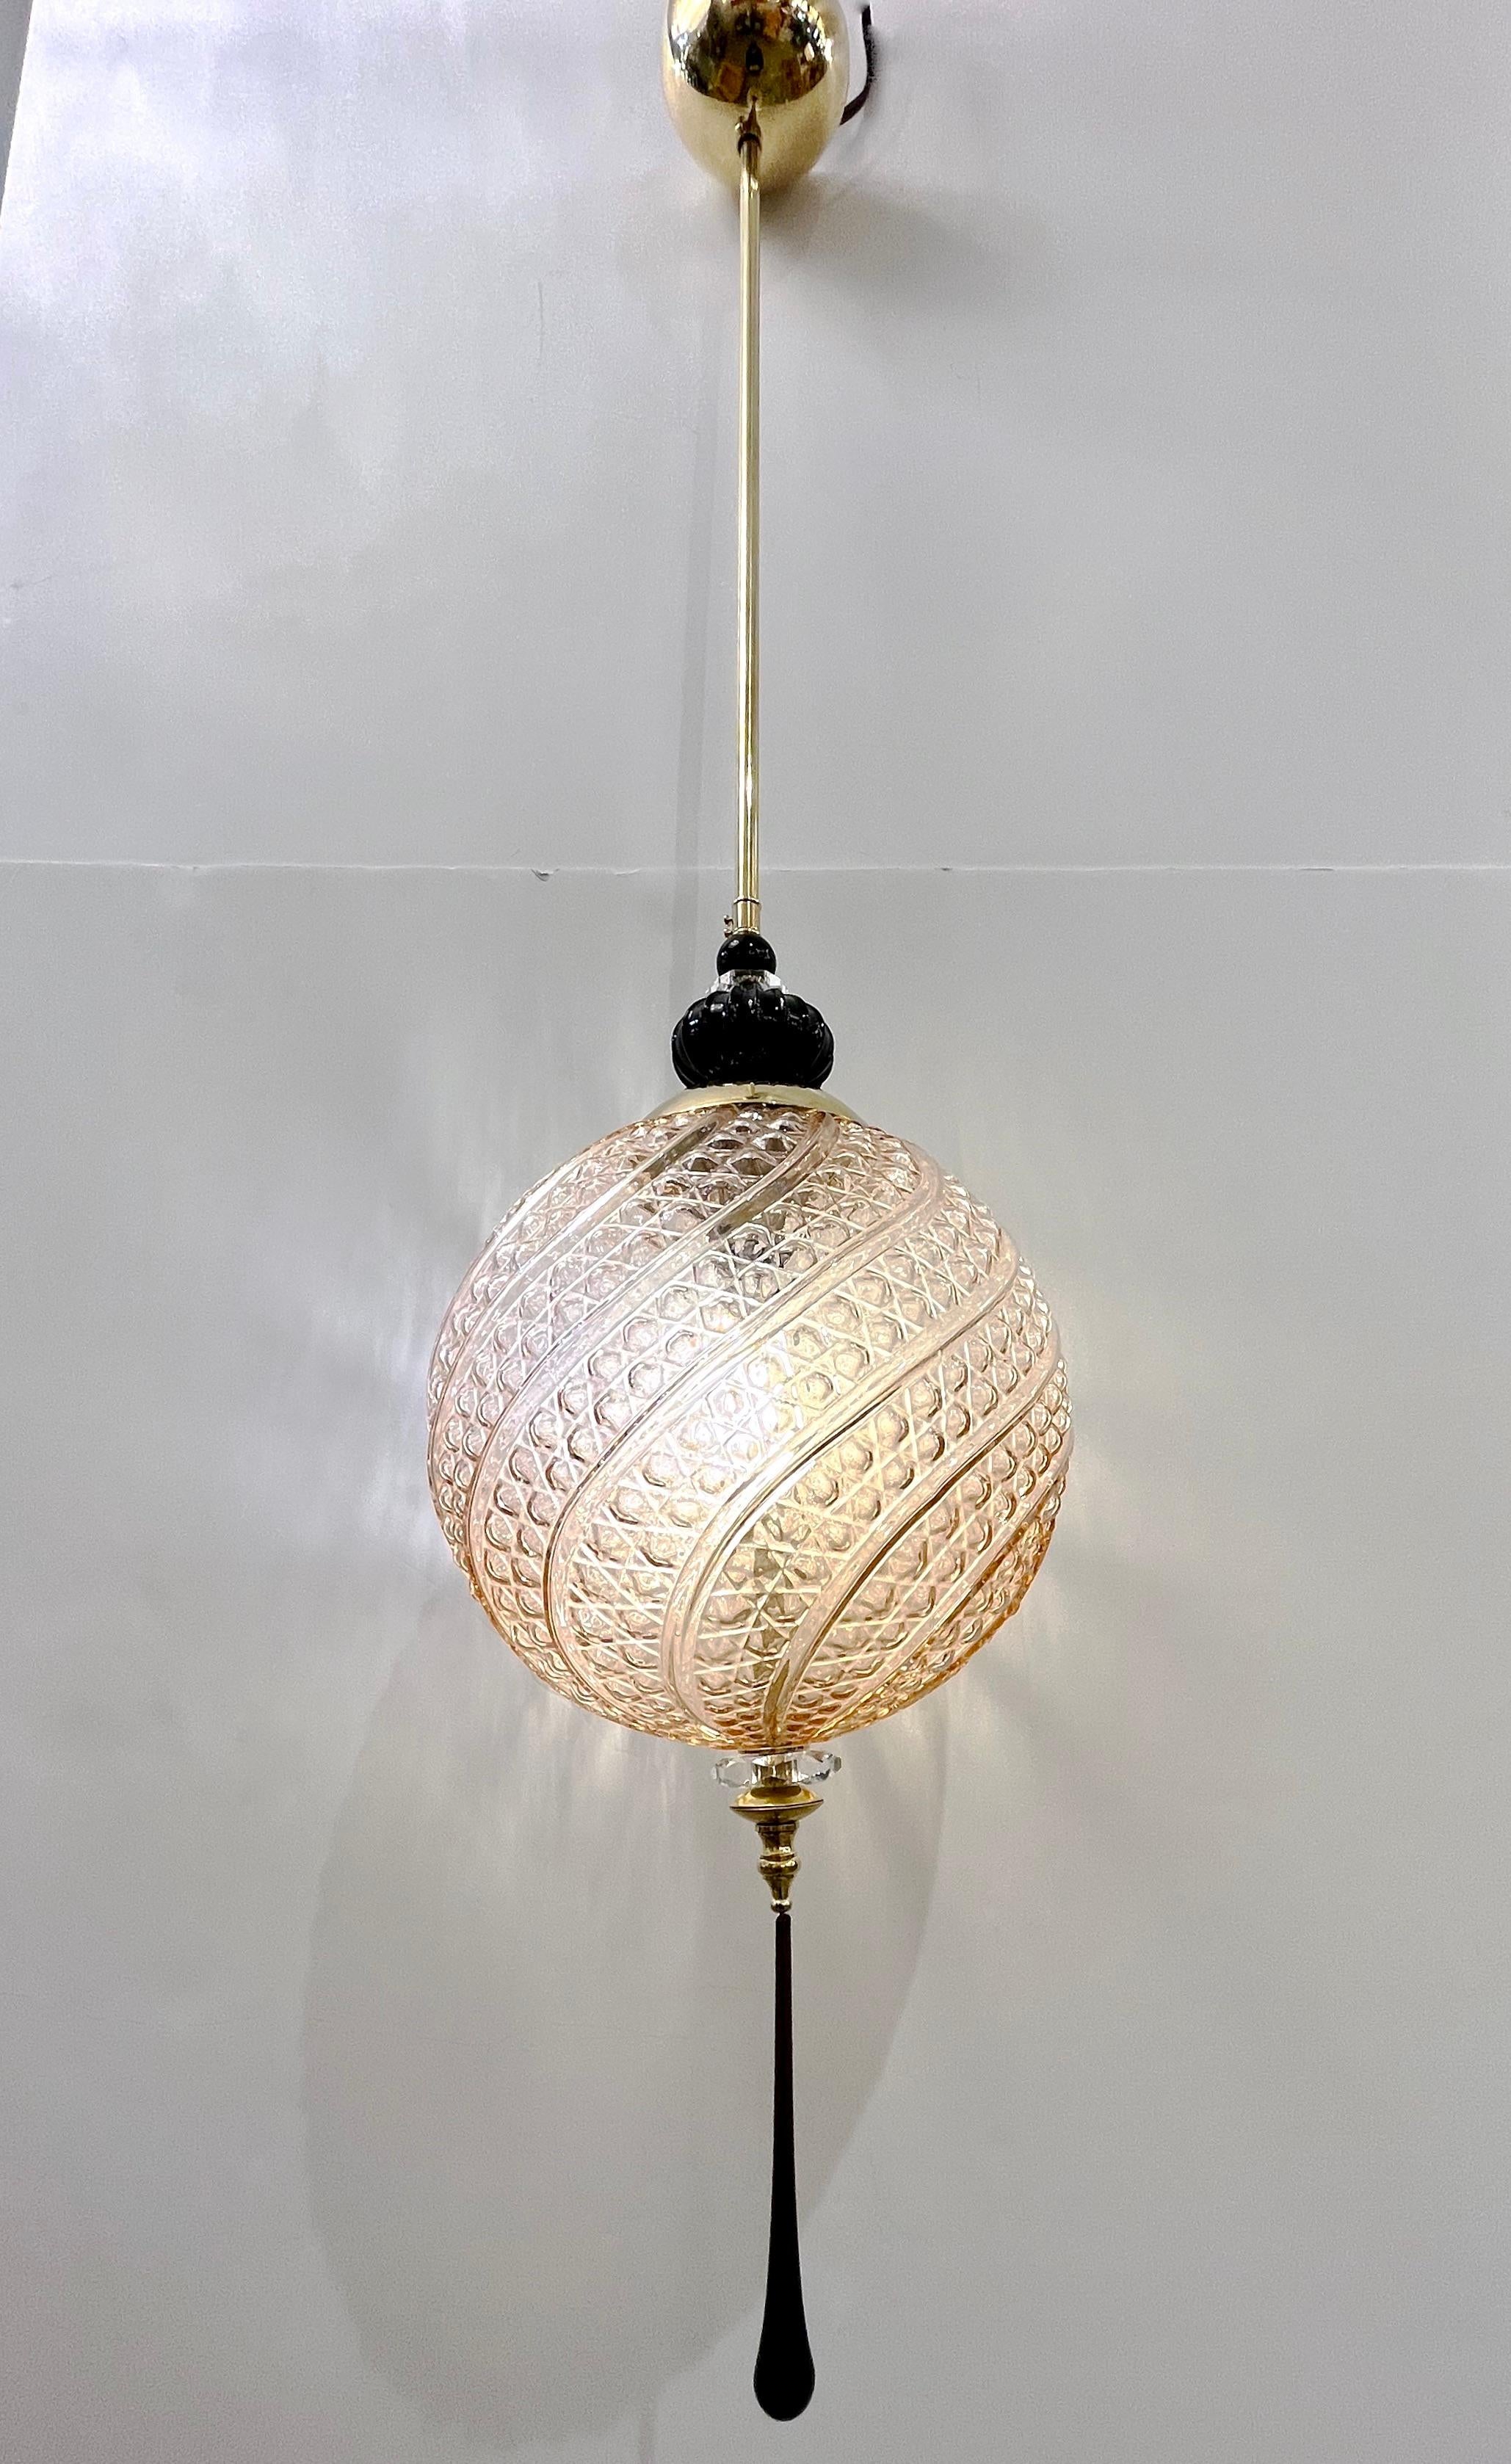 Luminaire à lanterne de style orientaliste contemporain, d'une série géométrique vénitienne moderne avec 4 formes selon les images, entièrement fabriqué à la main en Italie, ici avec des ferrures en laiton, la sphère ronde organique dans un verre de